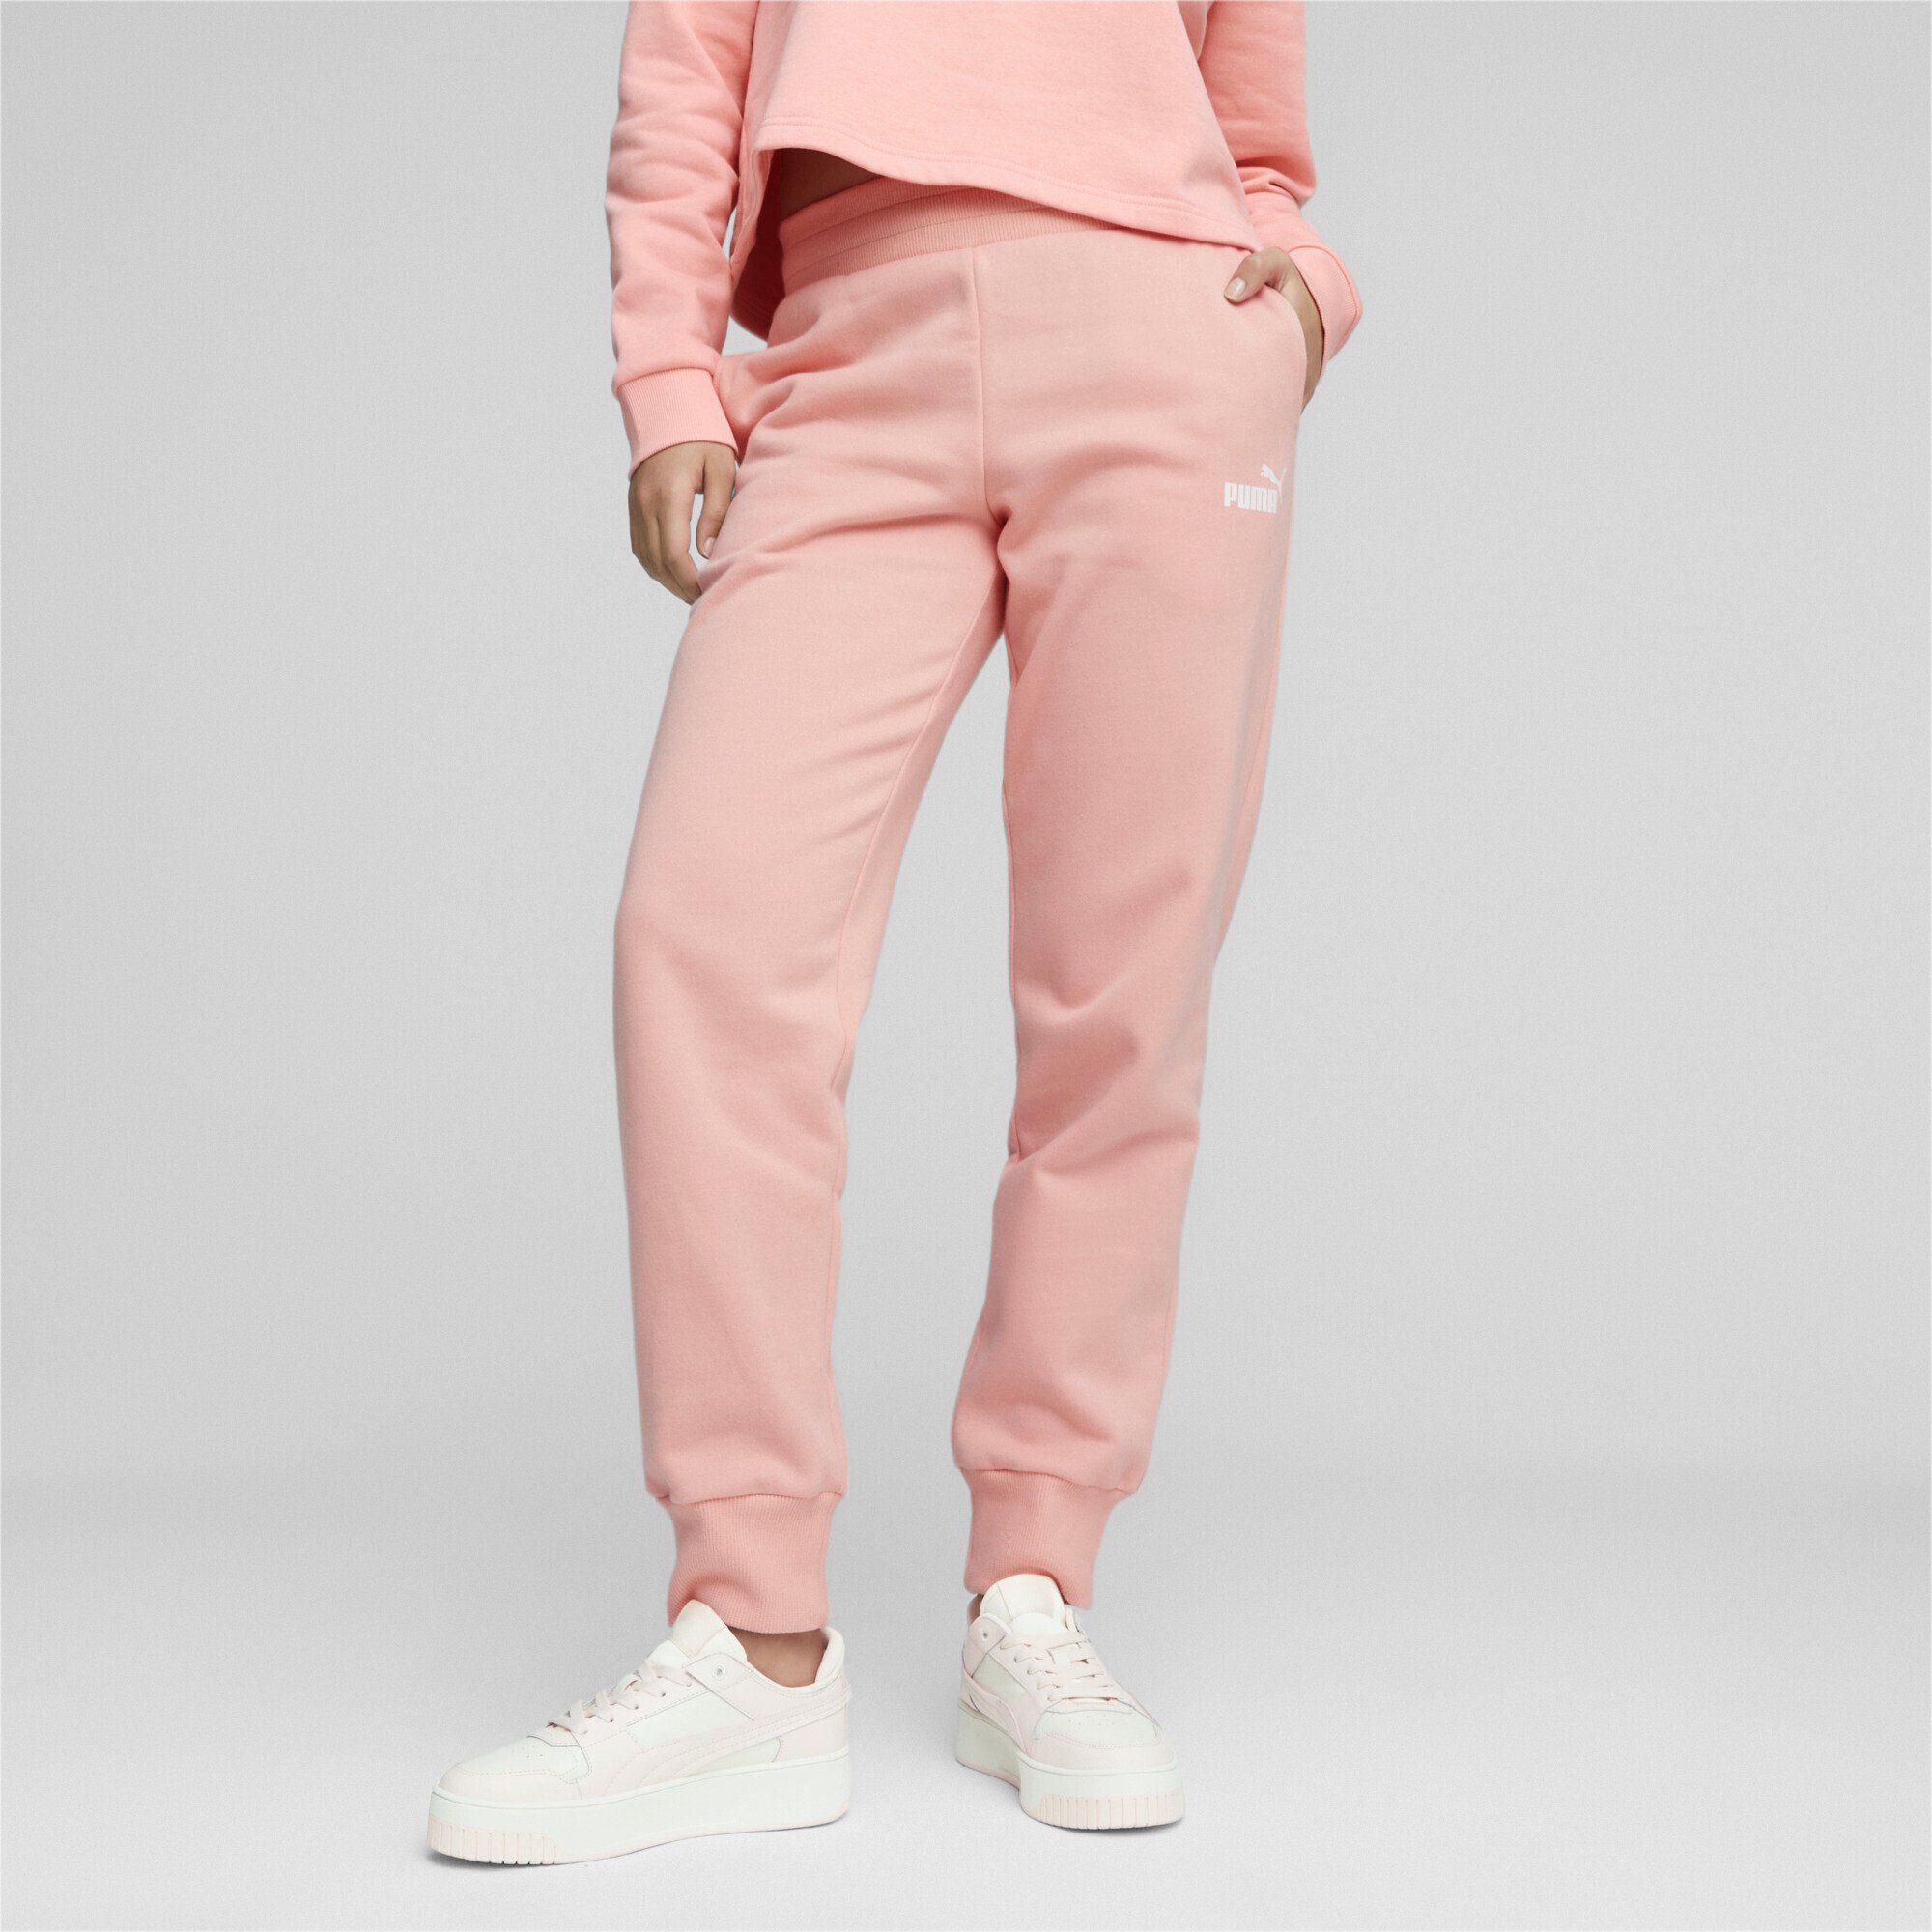 PUMA Sporthose Essentials Jogginghose Damen Smoothie Peach Pink